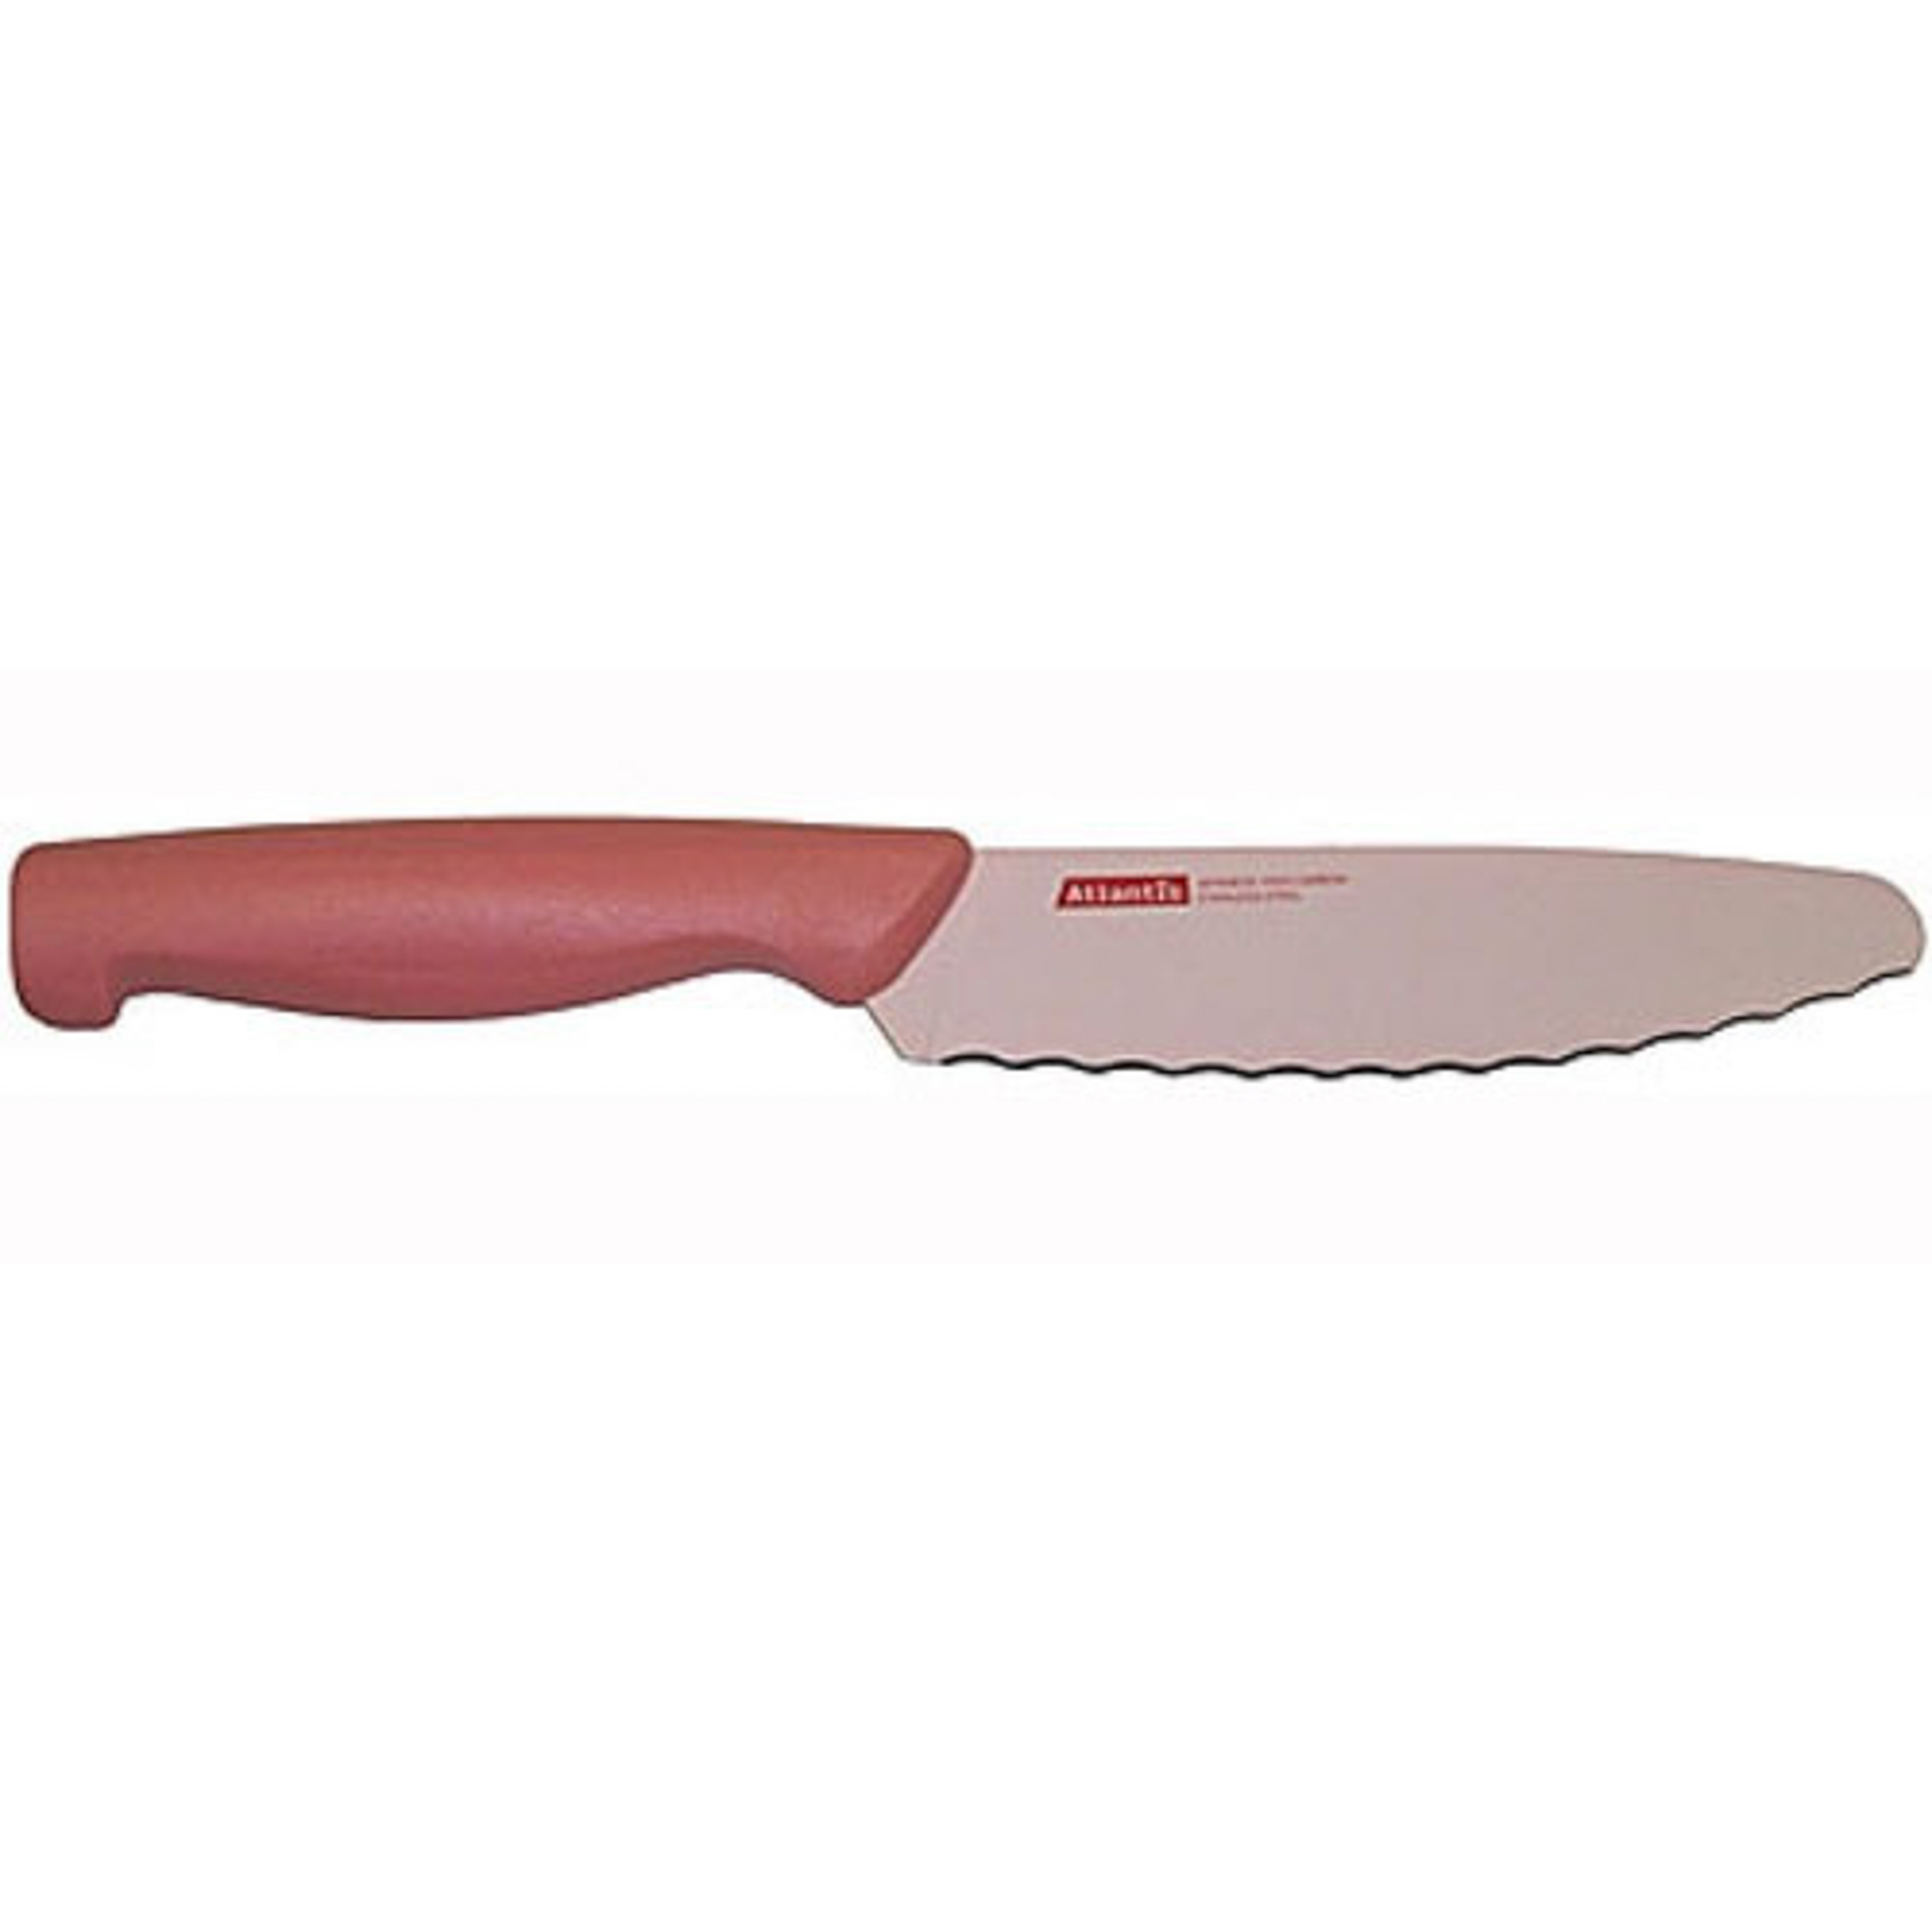 Нож универсальный 15см розовый Atlantis нож atlantis 24306 sk нож обвалочный 15см